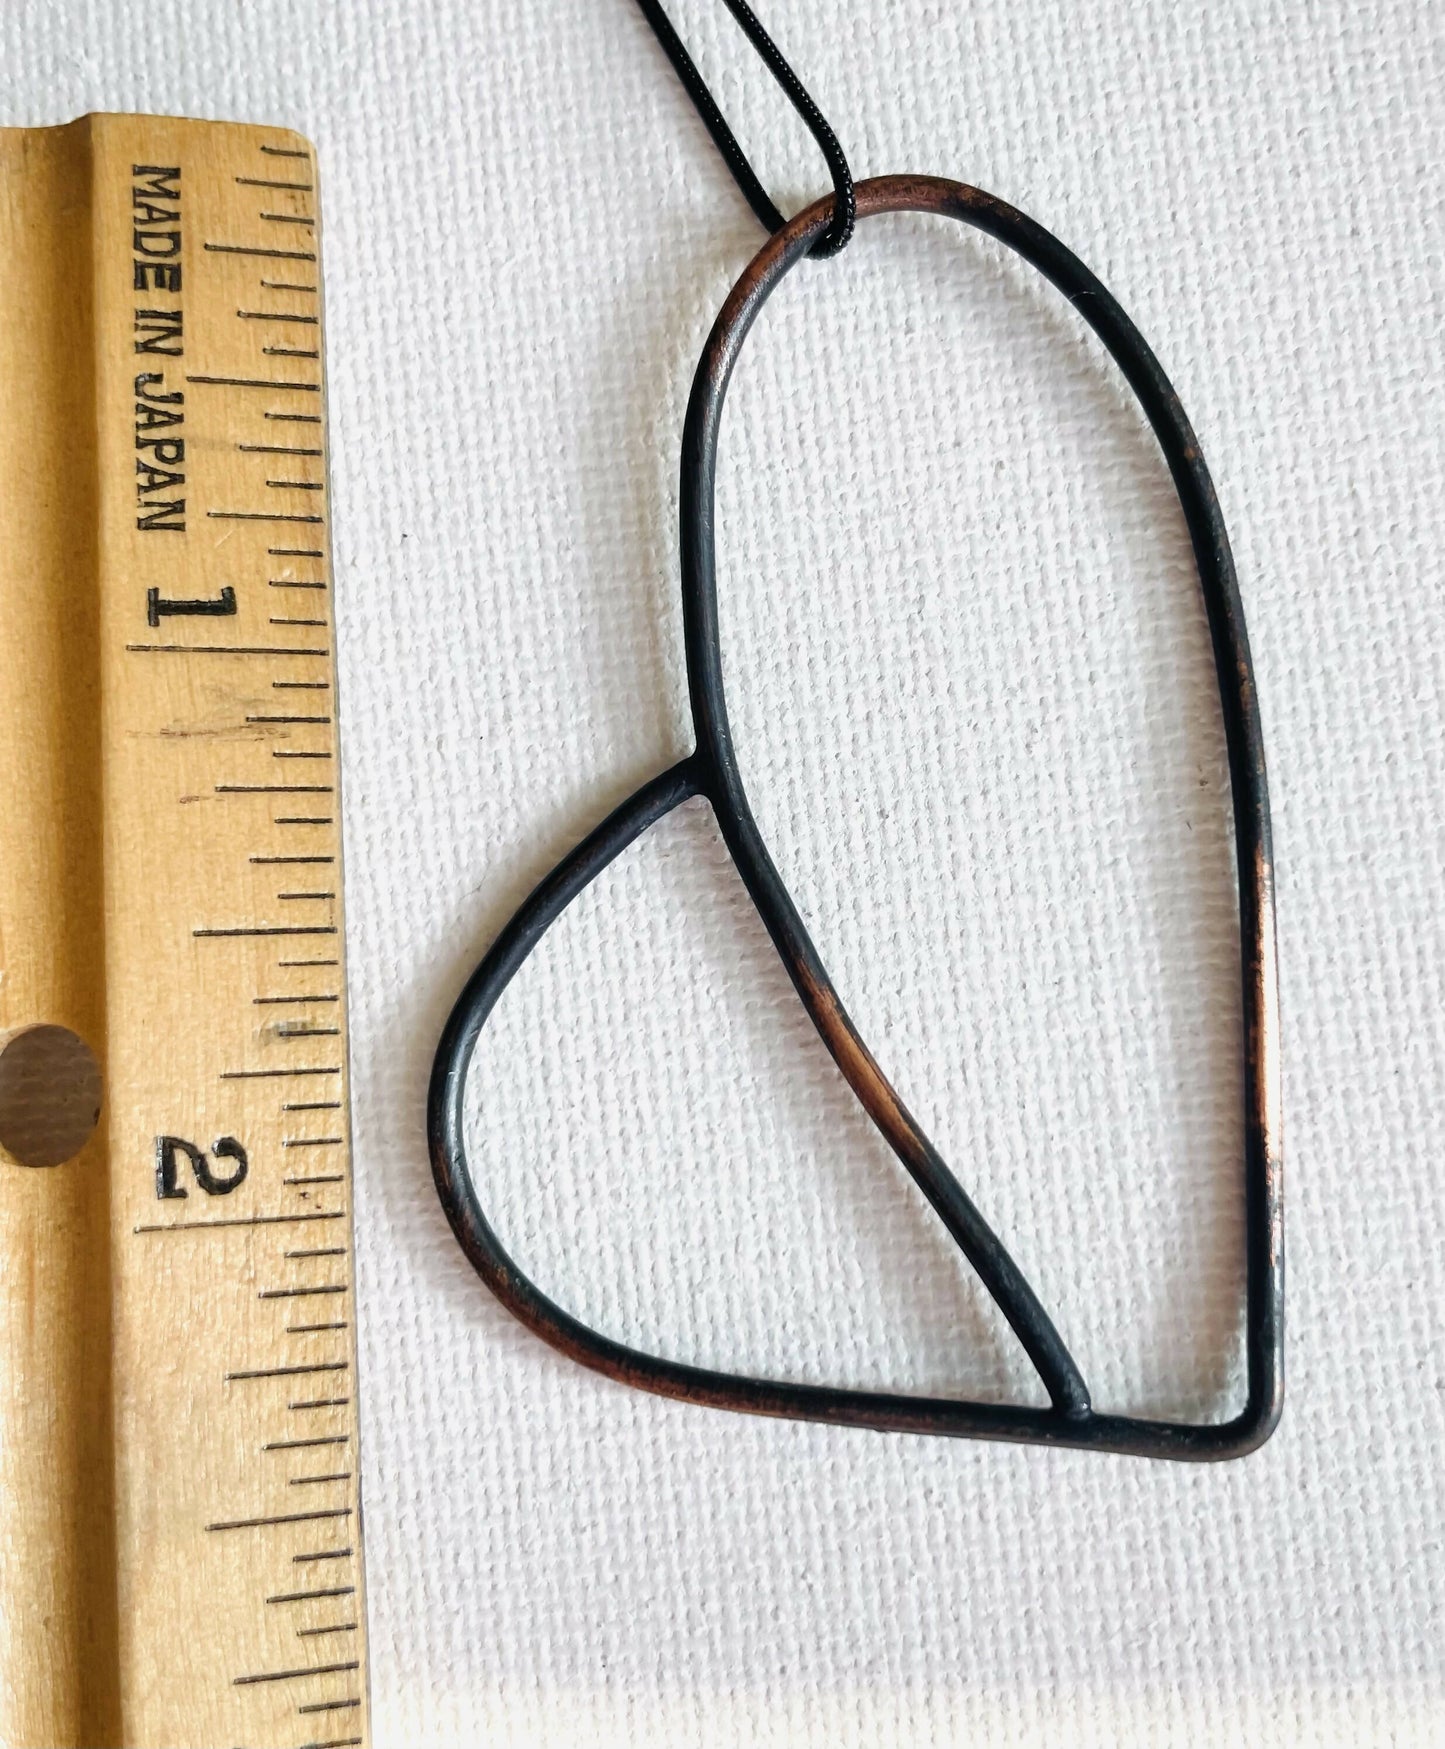 Copper Heart pendants